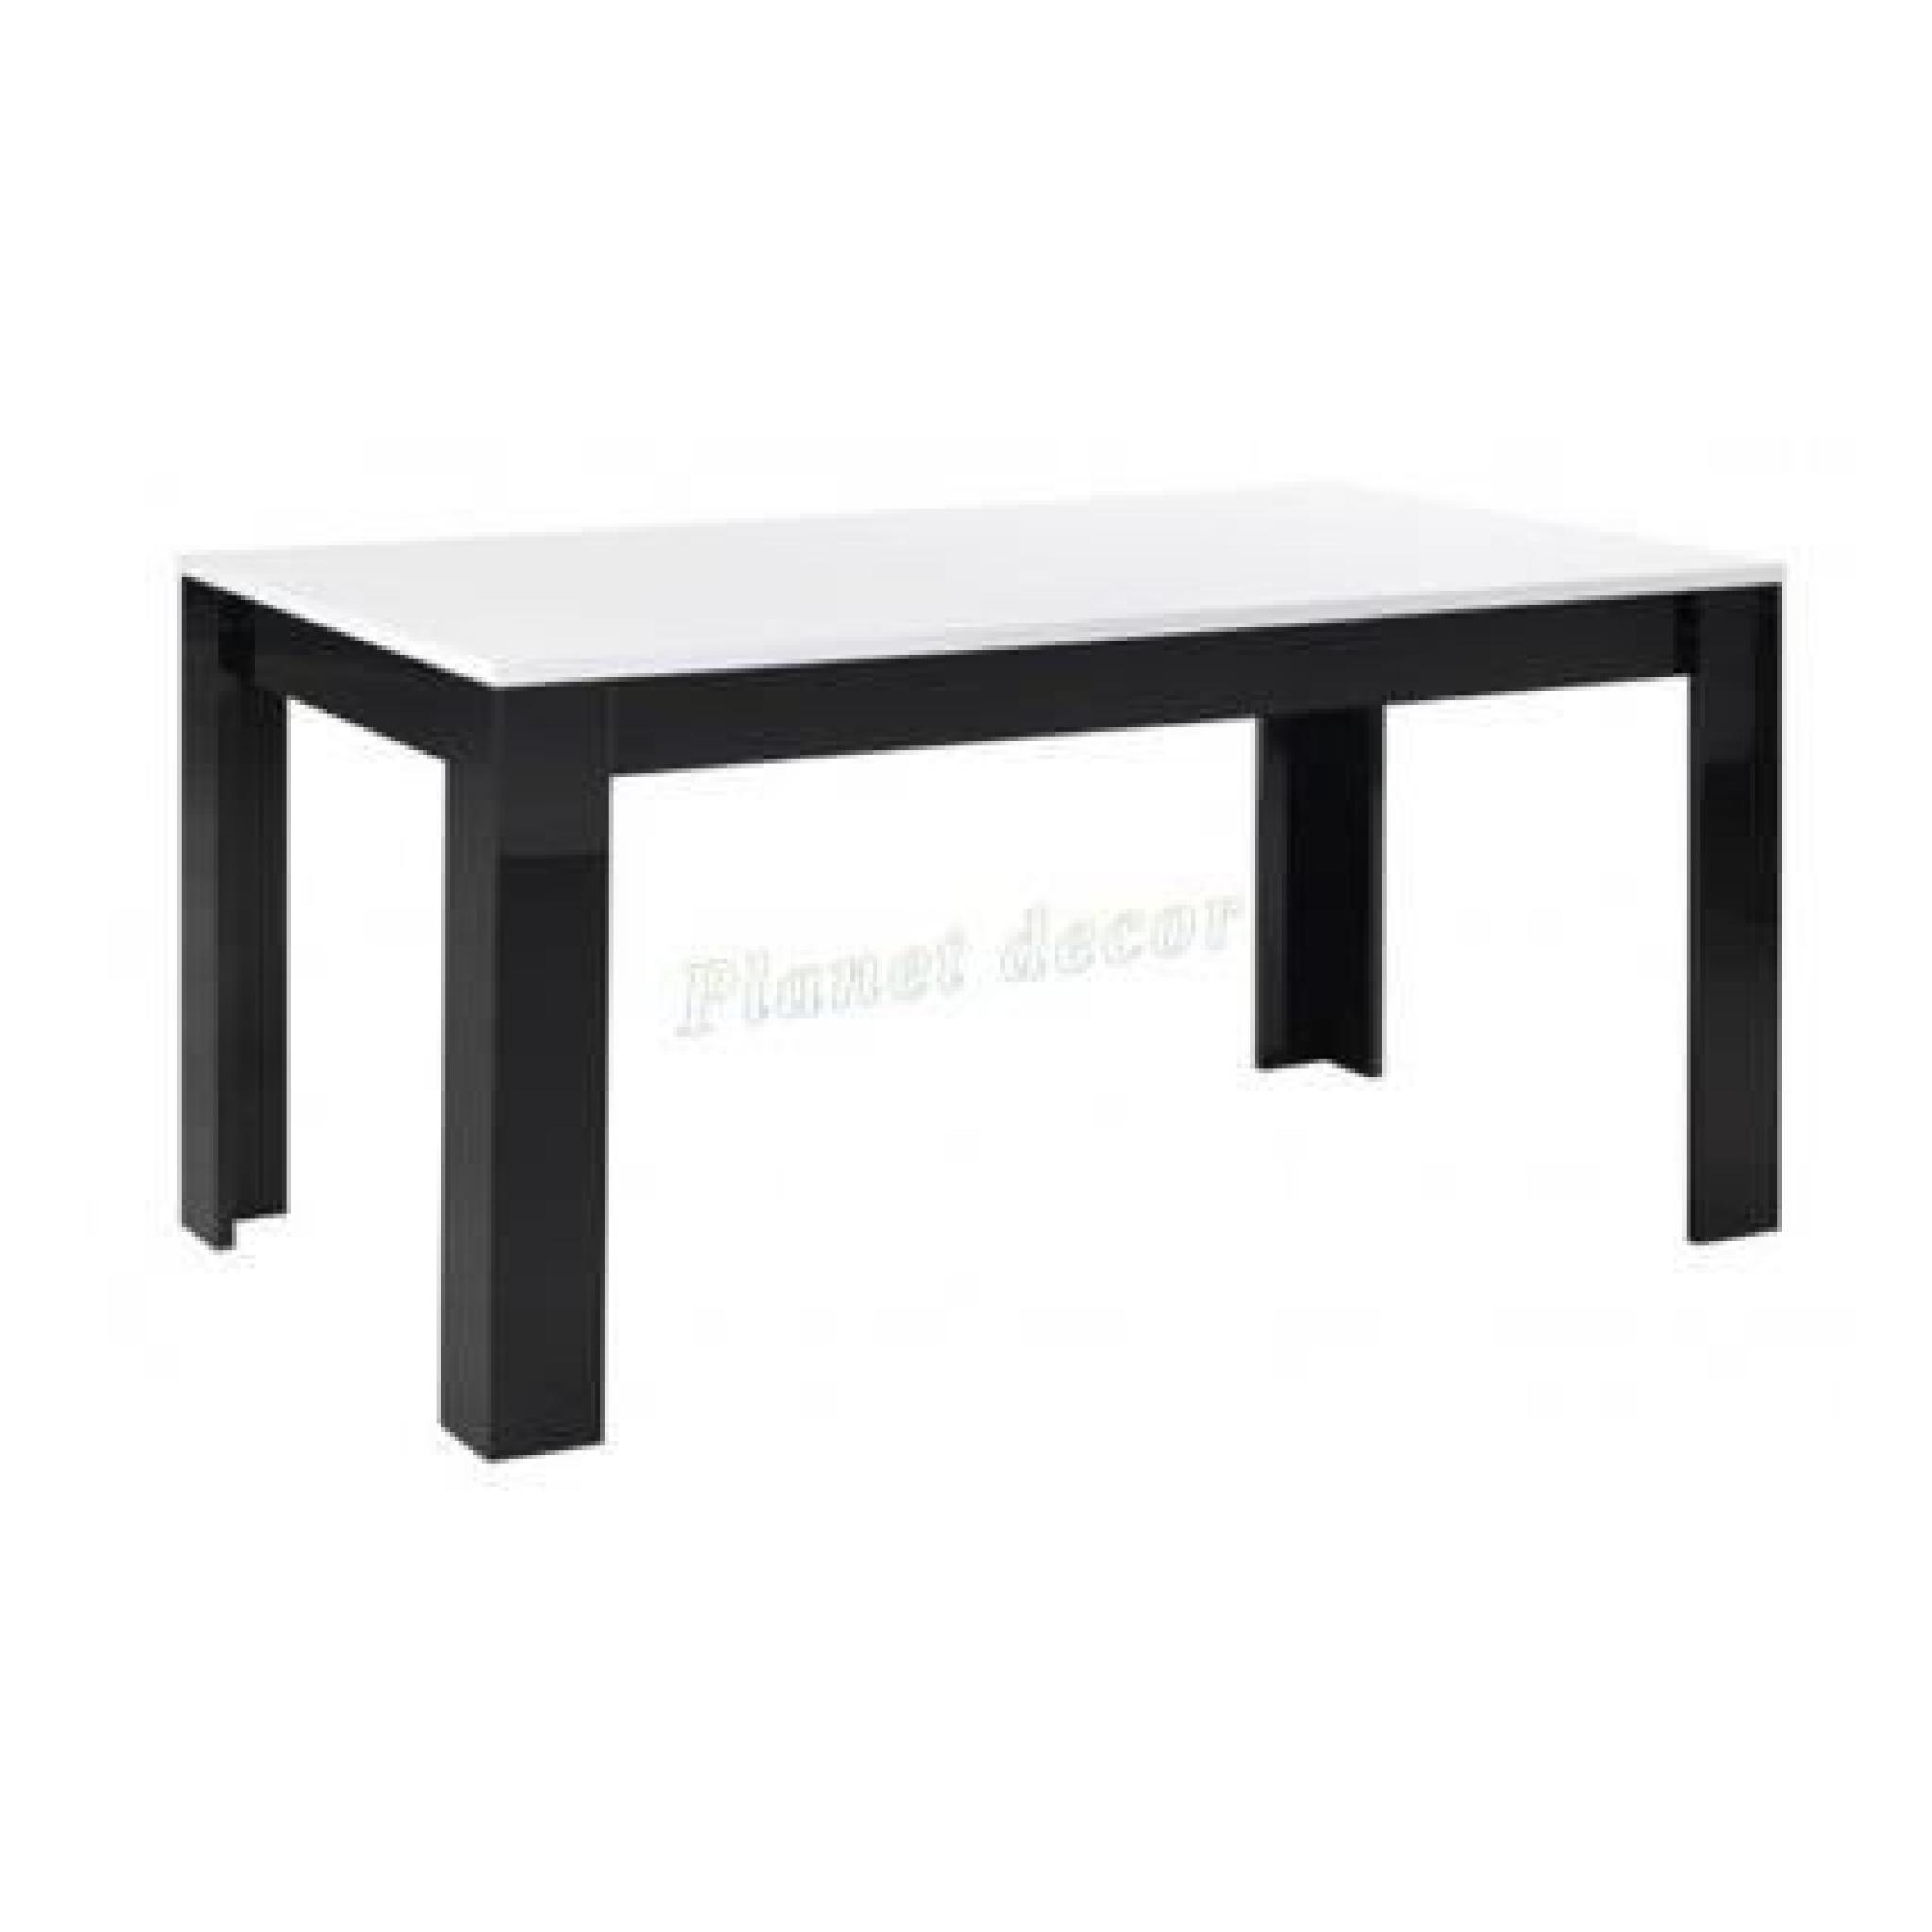 TABLE DE REPAS MODENA LAQUEE NOIR-BLANC L190cm